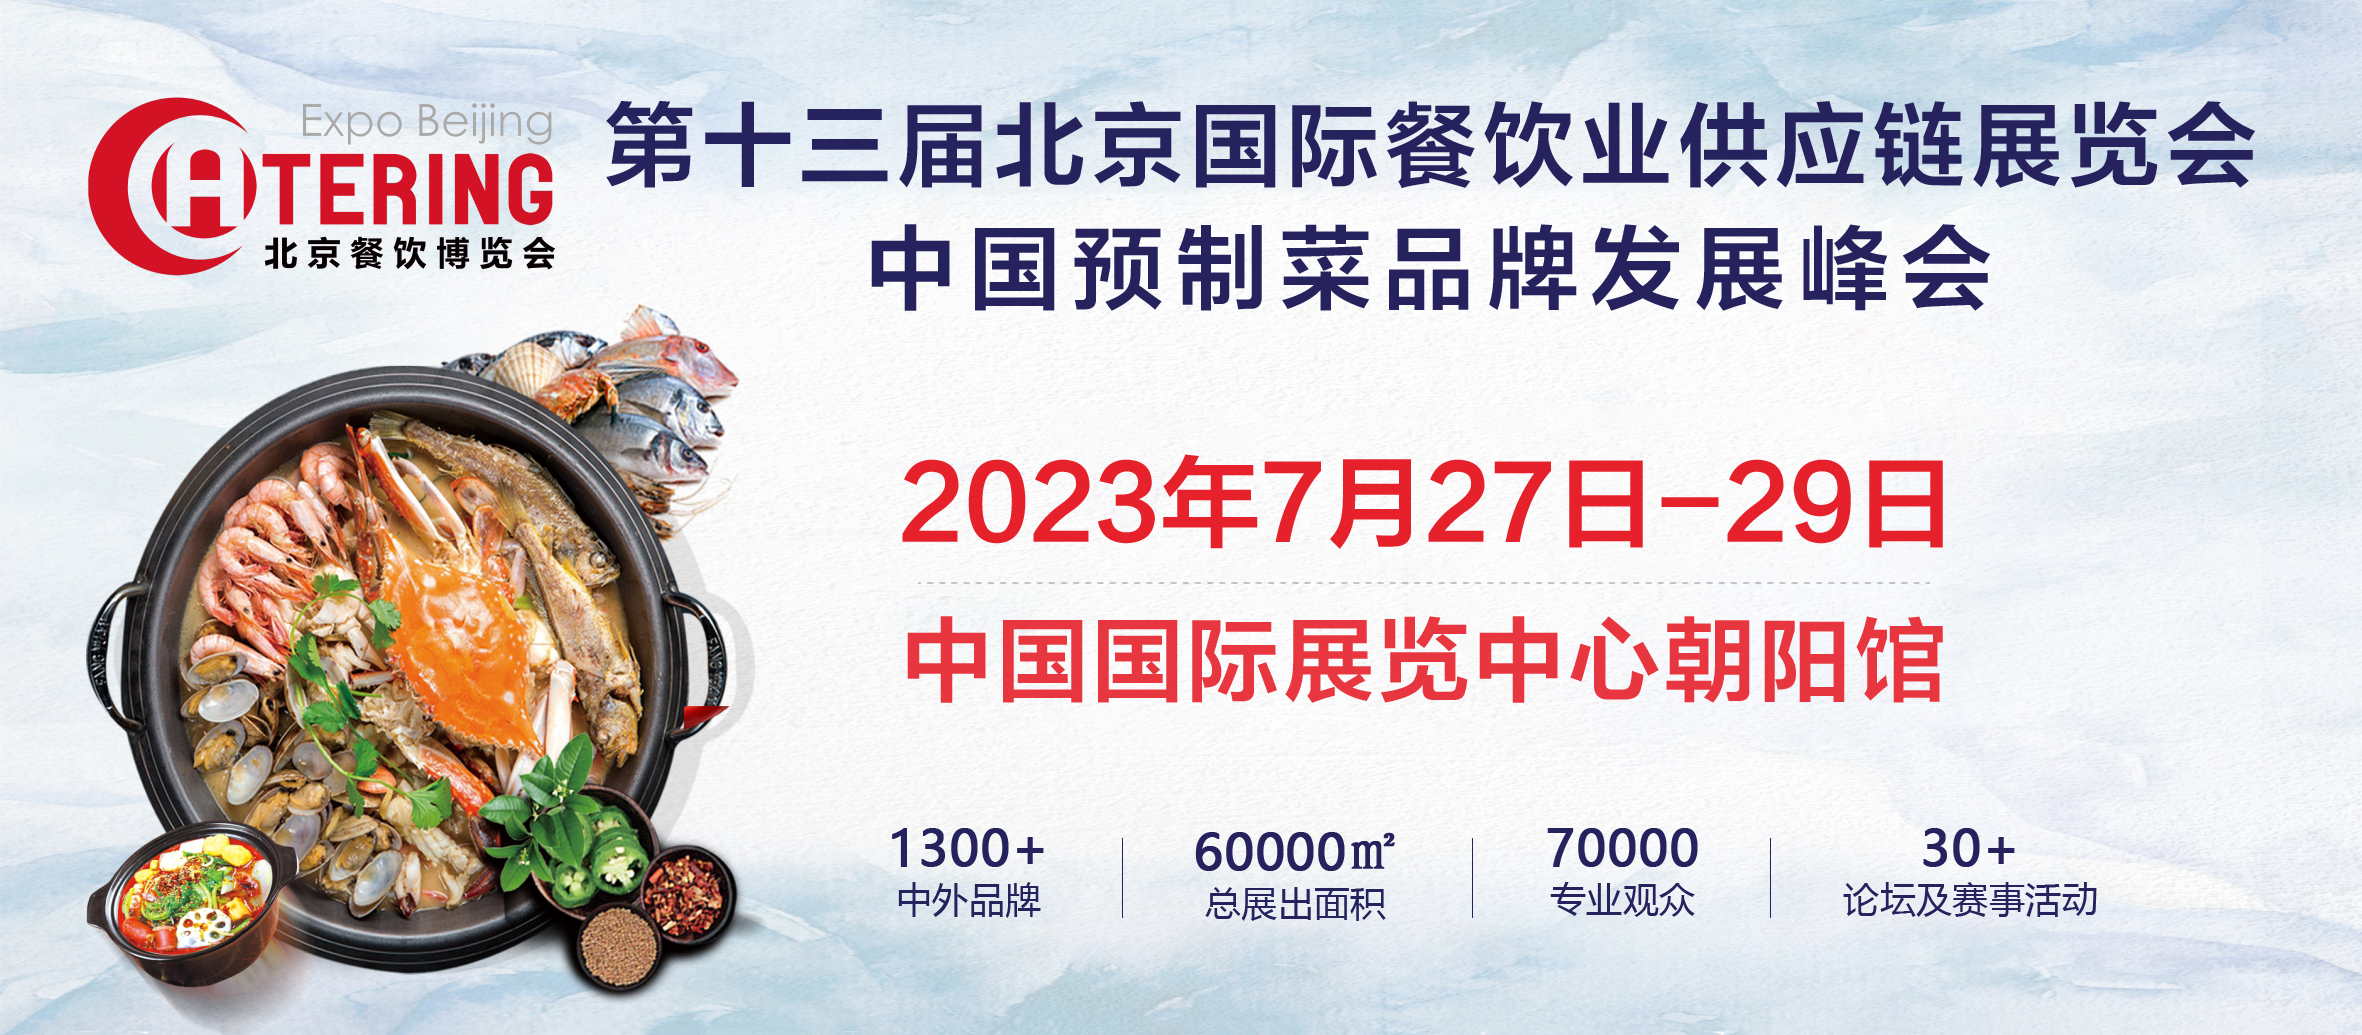 展商推介 | 鑫黄山特产将携最新产品亮相2023北京餐博会(图1)